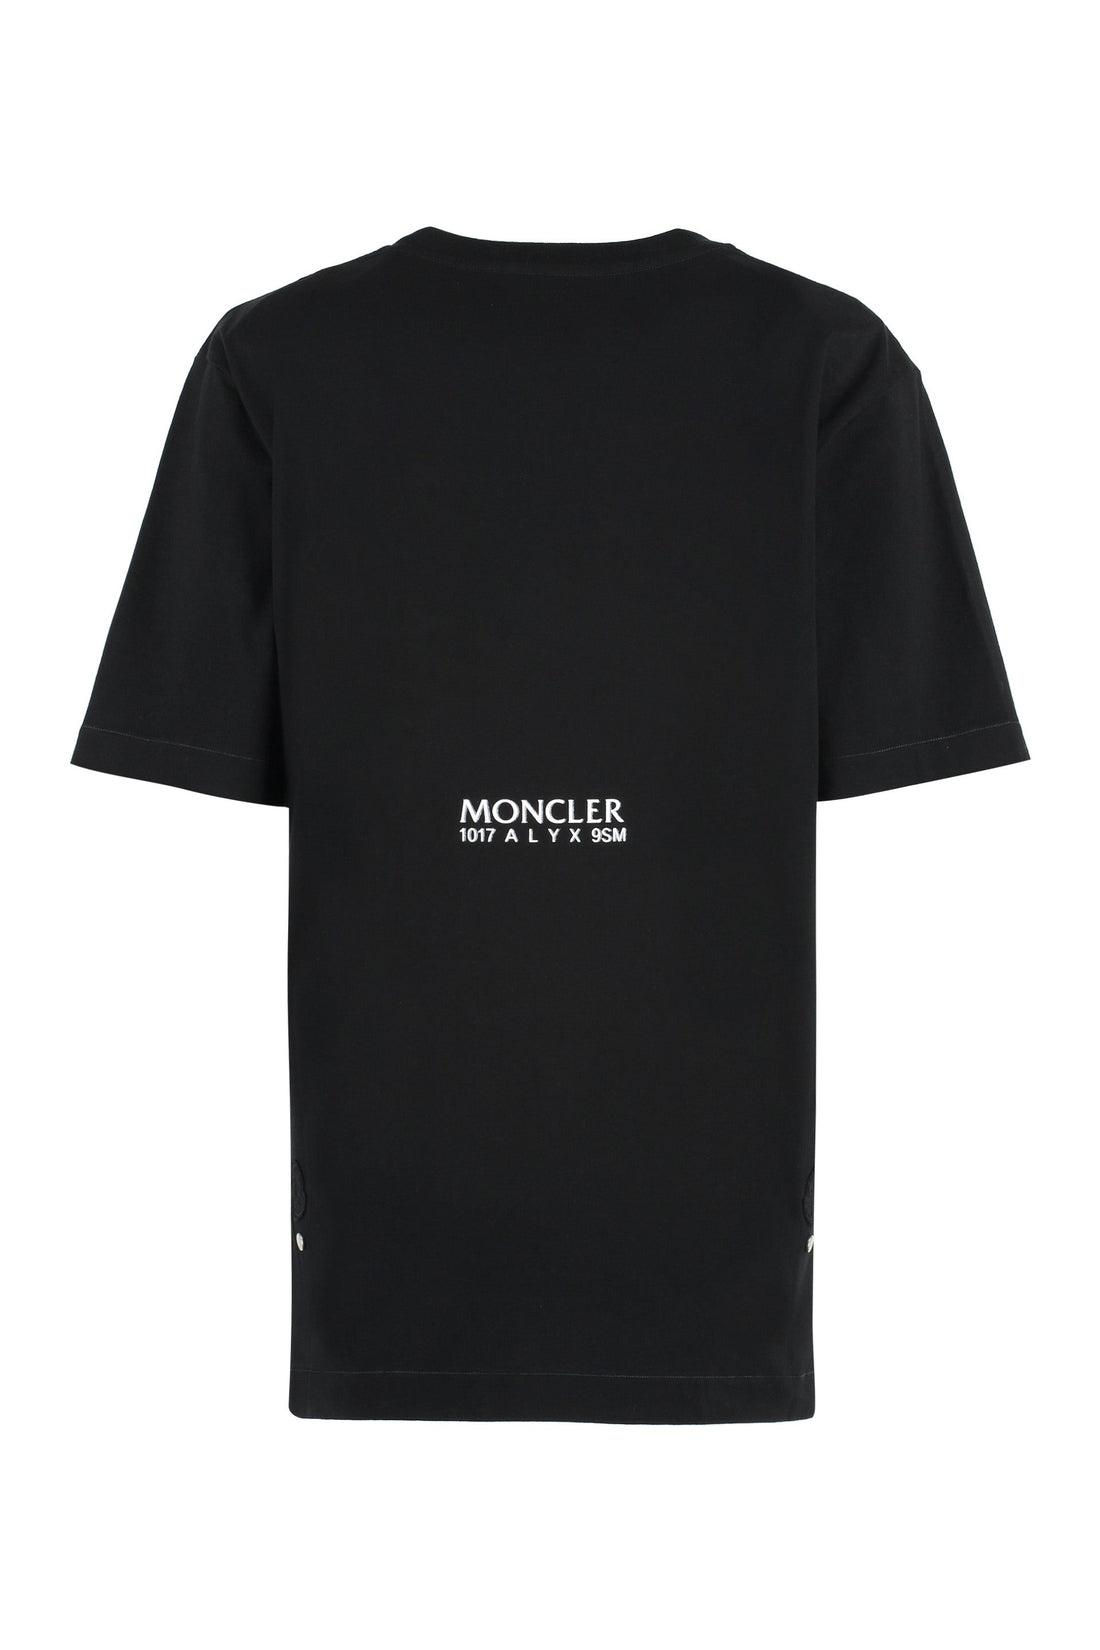 Moncler Genius-OUTLET-SALE-6 Moncler 1017 Alyx 9SM - Cotton T-shirt-ARCHIVIST